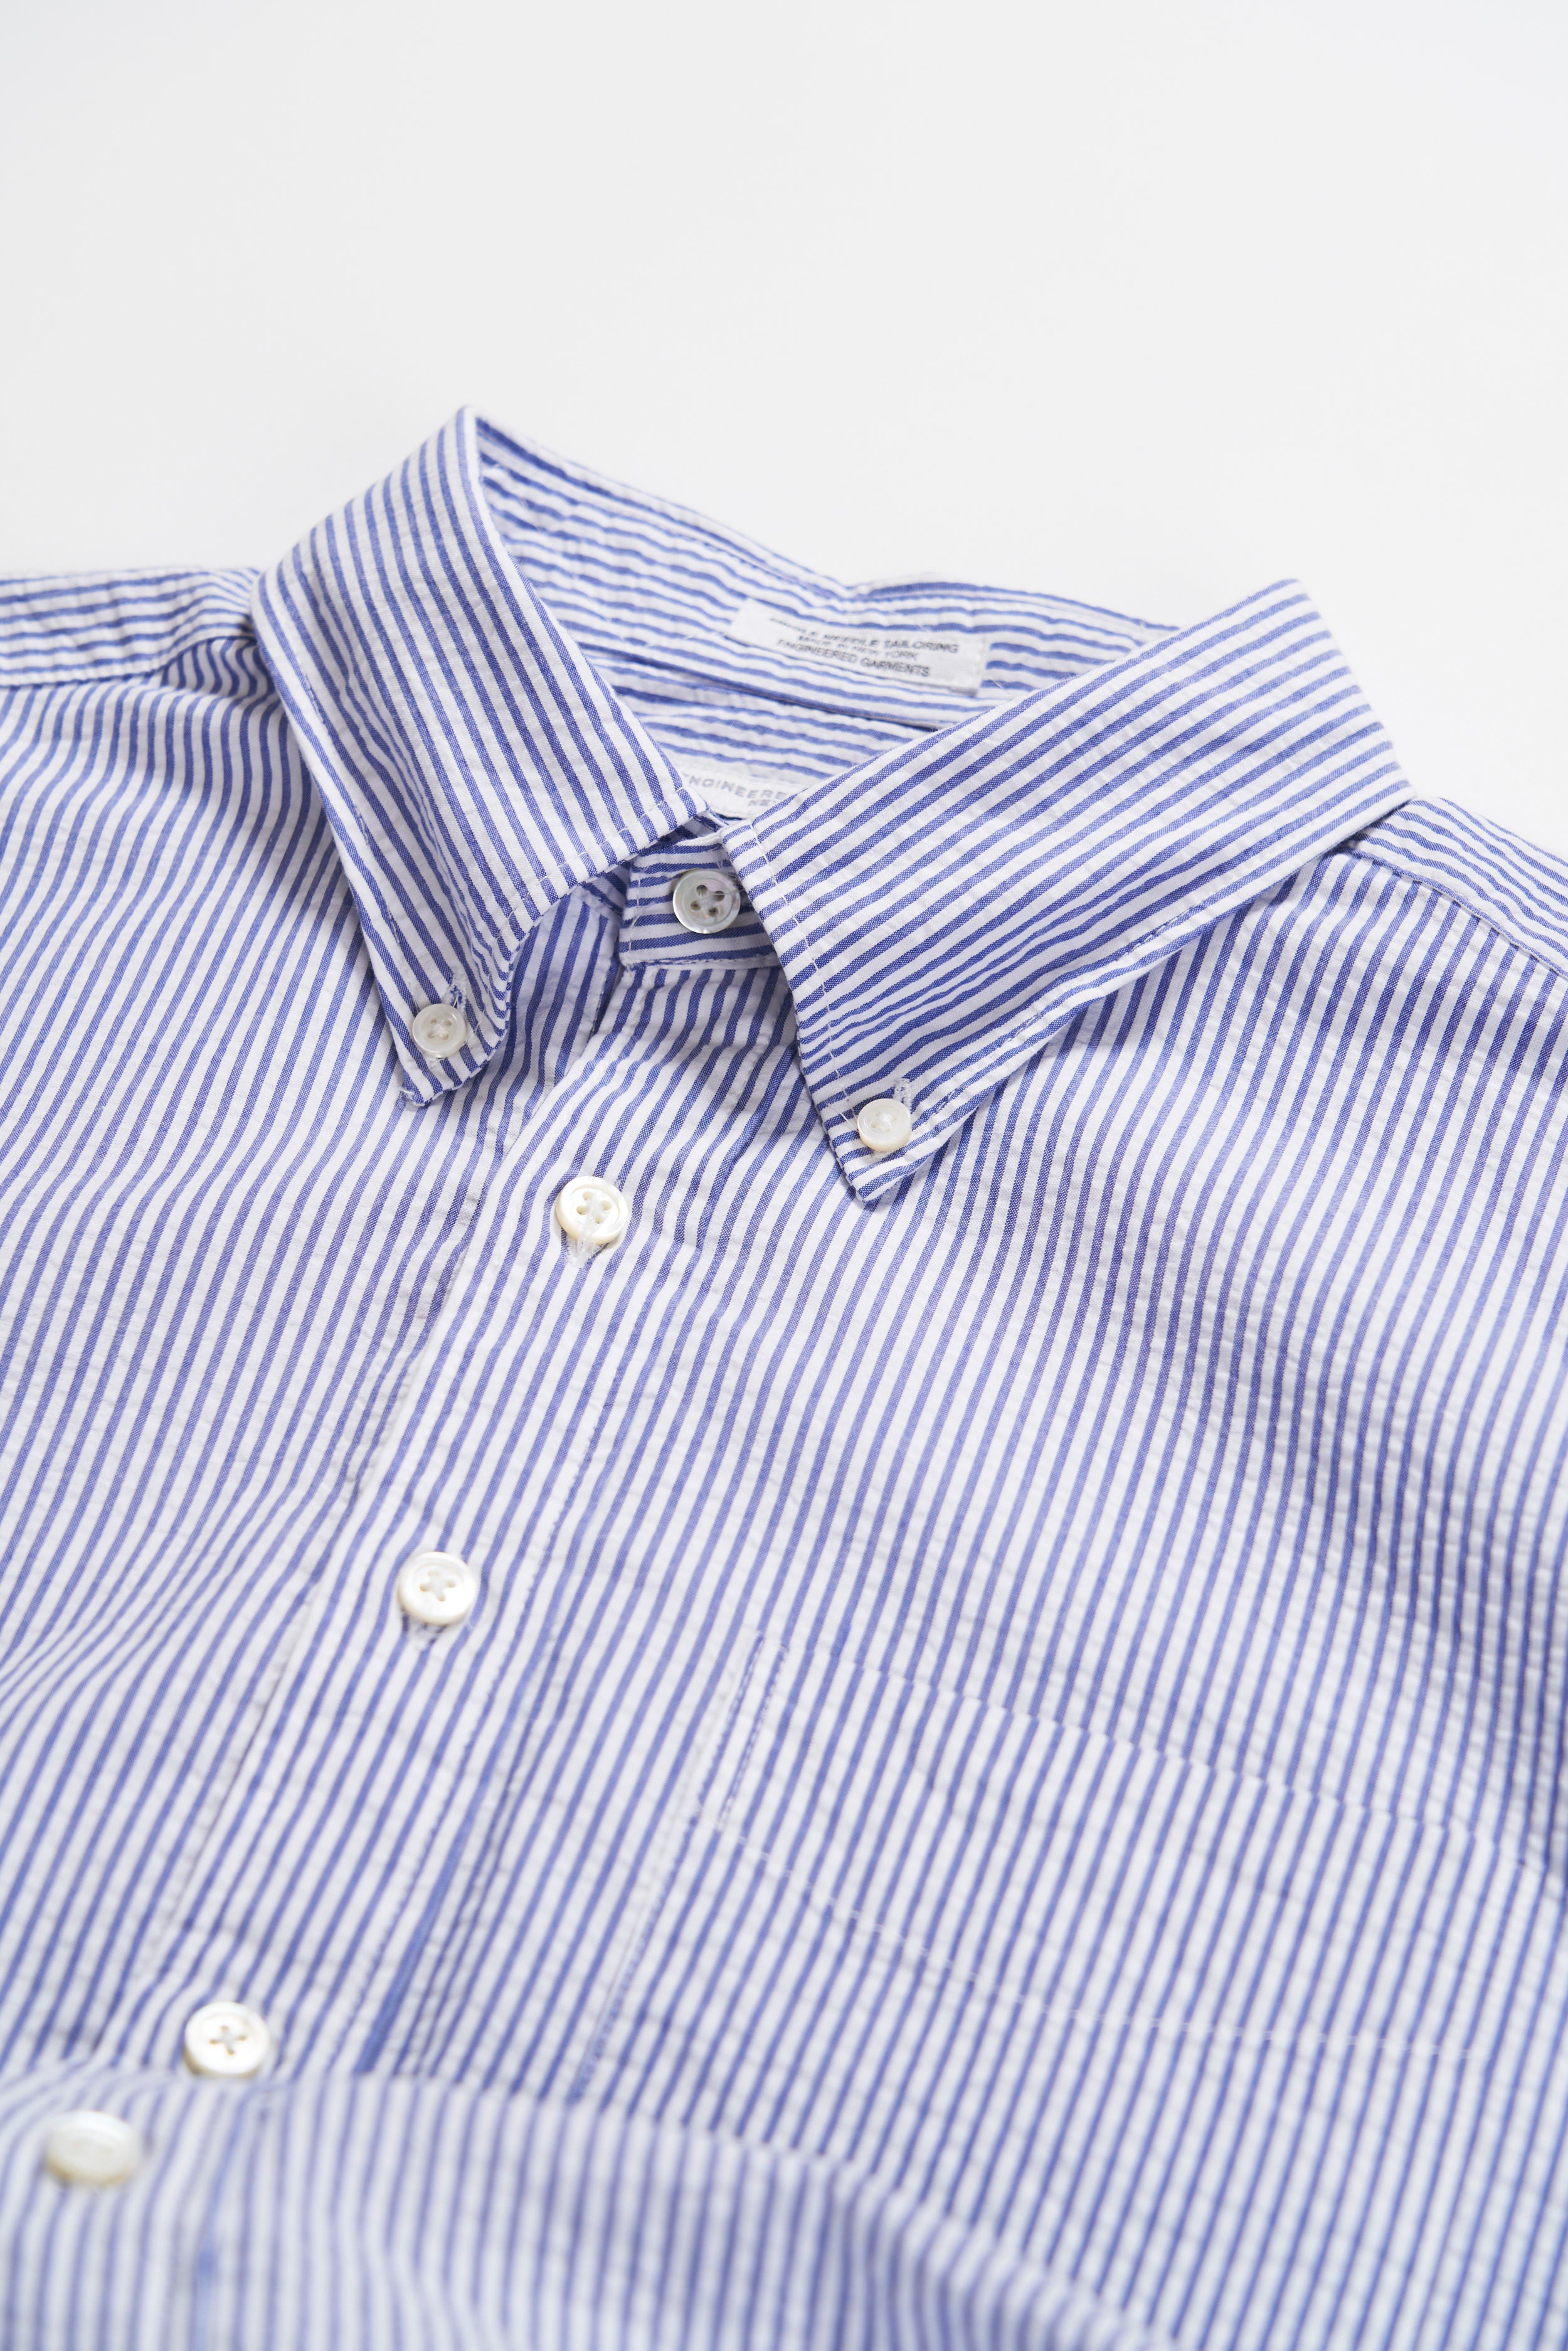 19 Century BD Shirt - Blue / White Cotton Seersucker